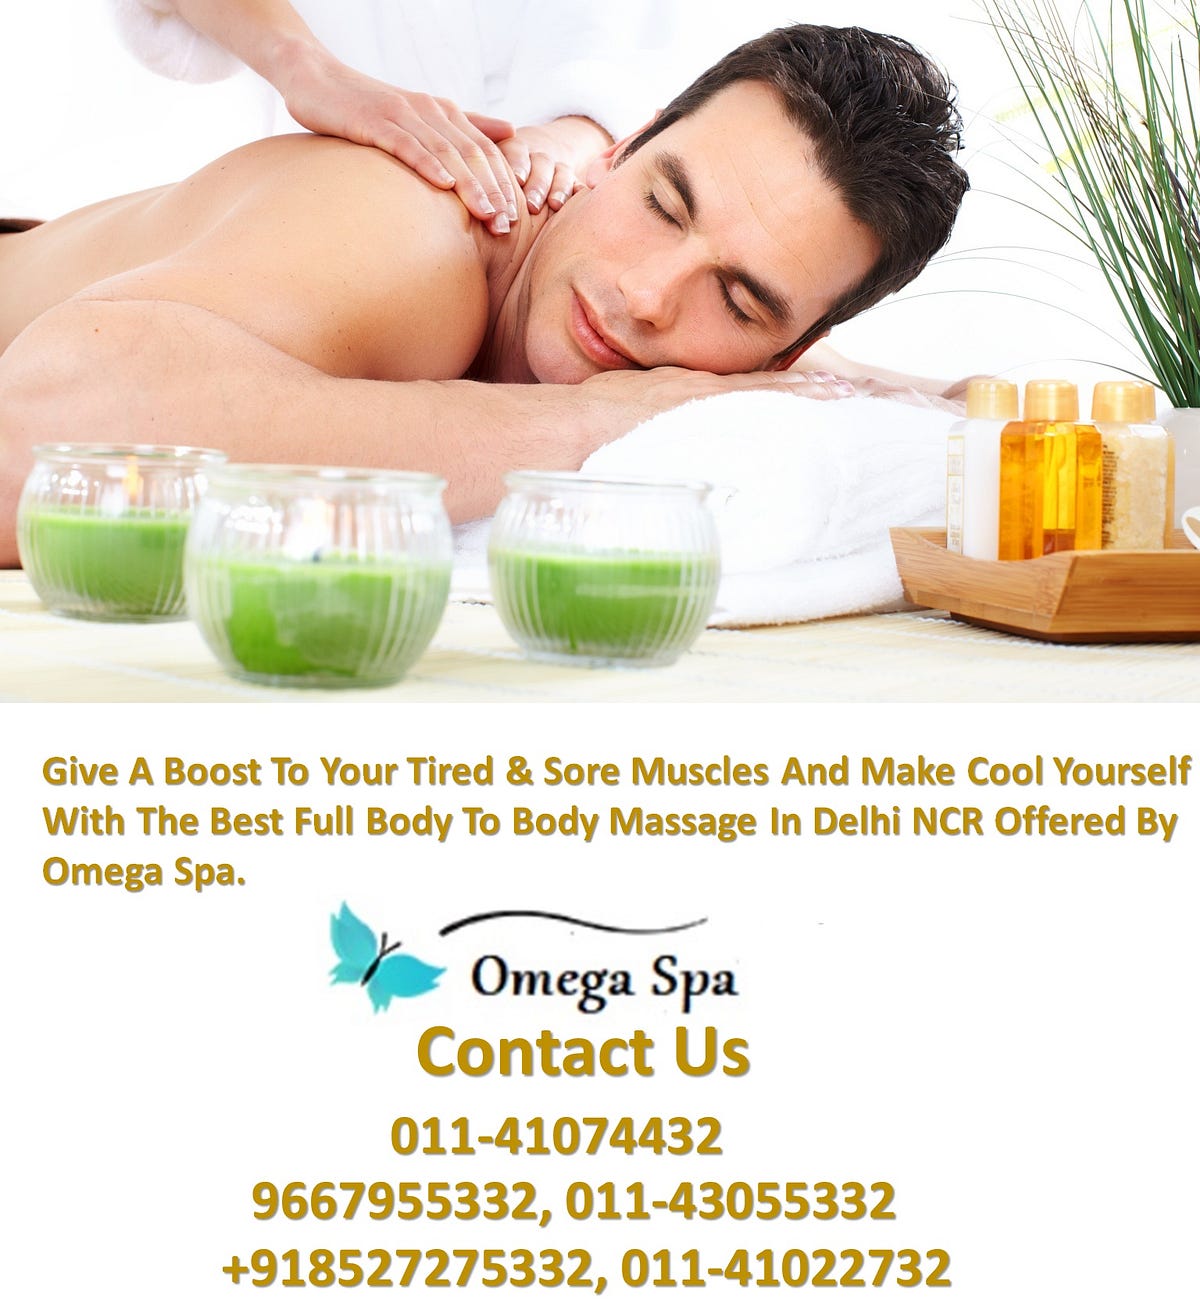 Full Body Massage Service Centers In Delhi Omega Spa By Full Body Massage Center In Delhi Medium